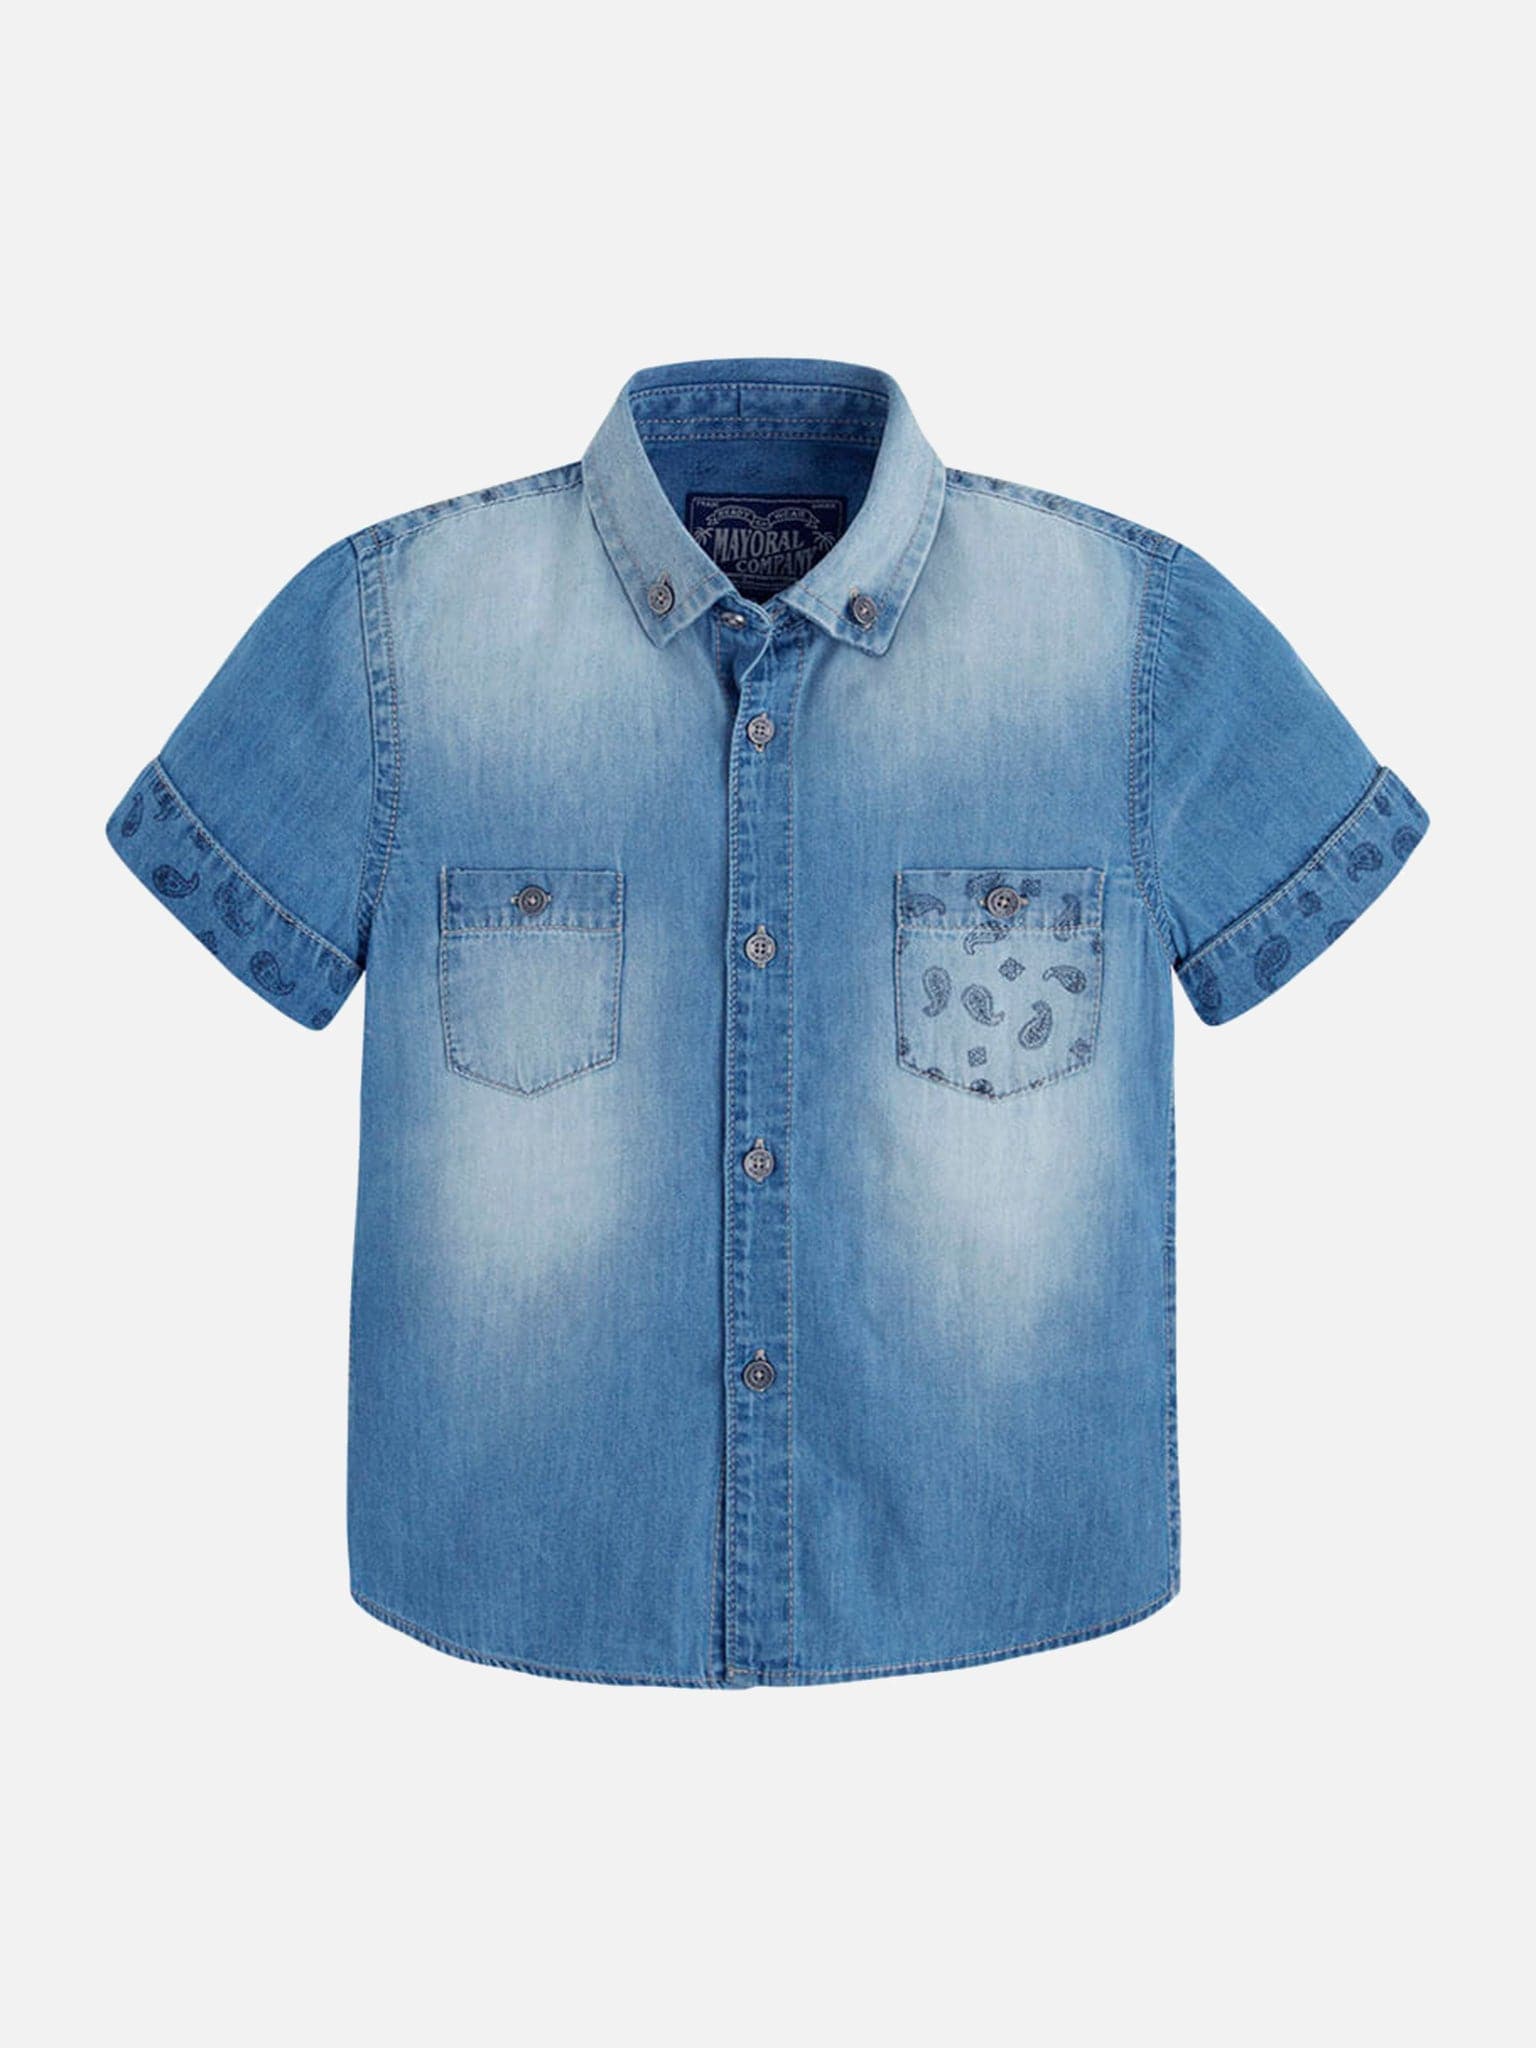 Παιδικό πουκάμισο τζιν | 03150-005